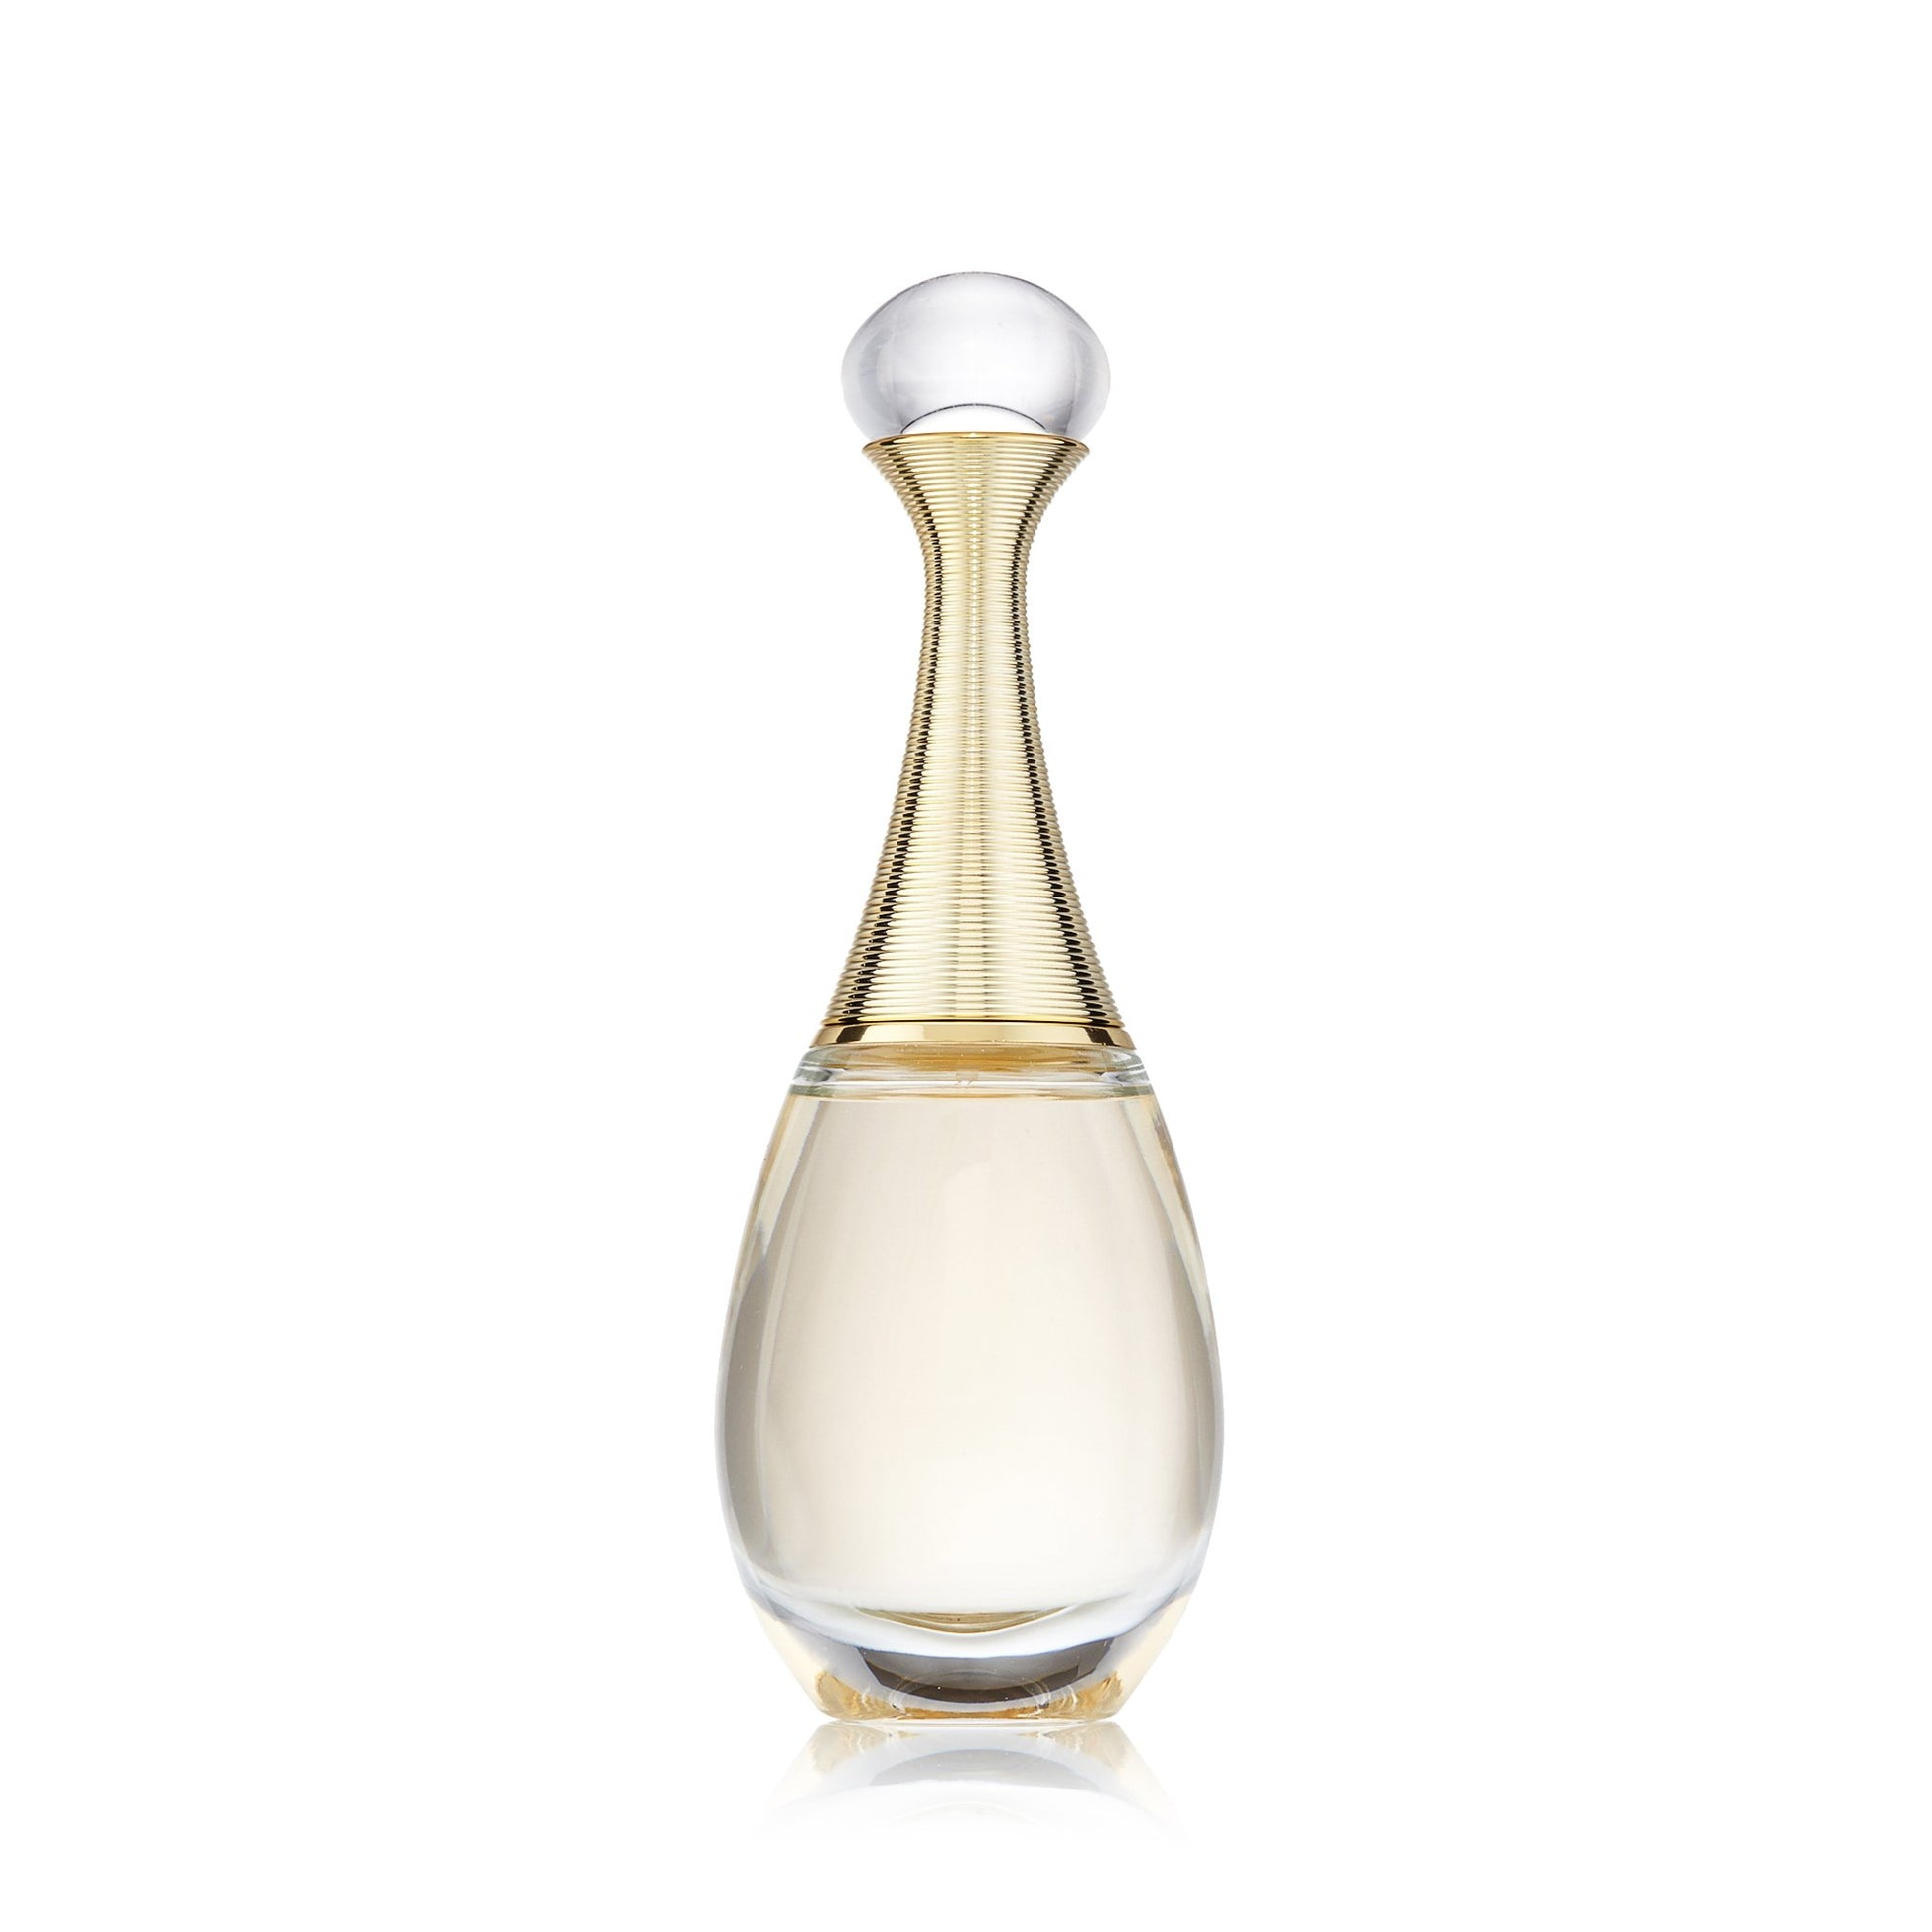 J'Adore Eau de Parfum Spray for Women by Dior 2.5 oz. Click to open in modal